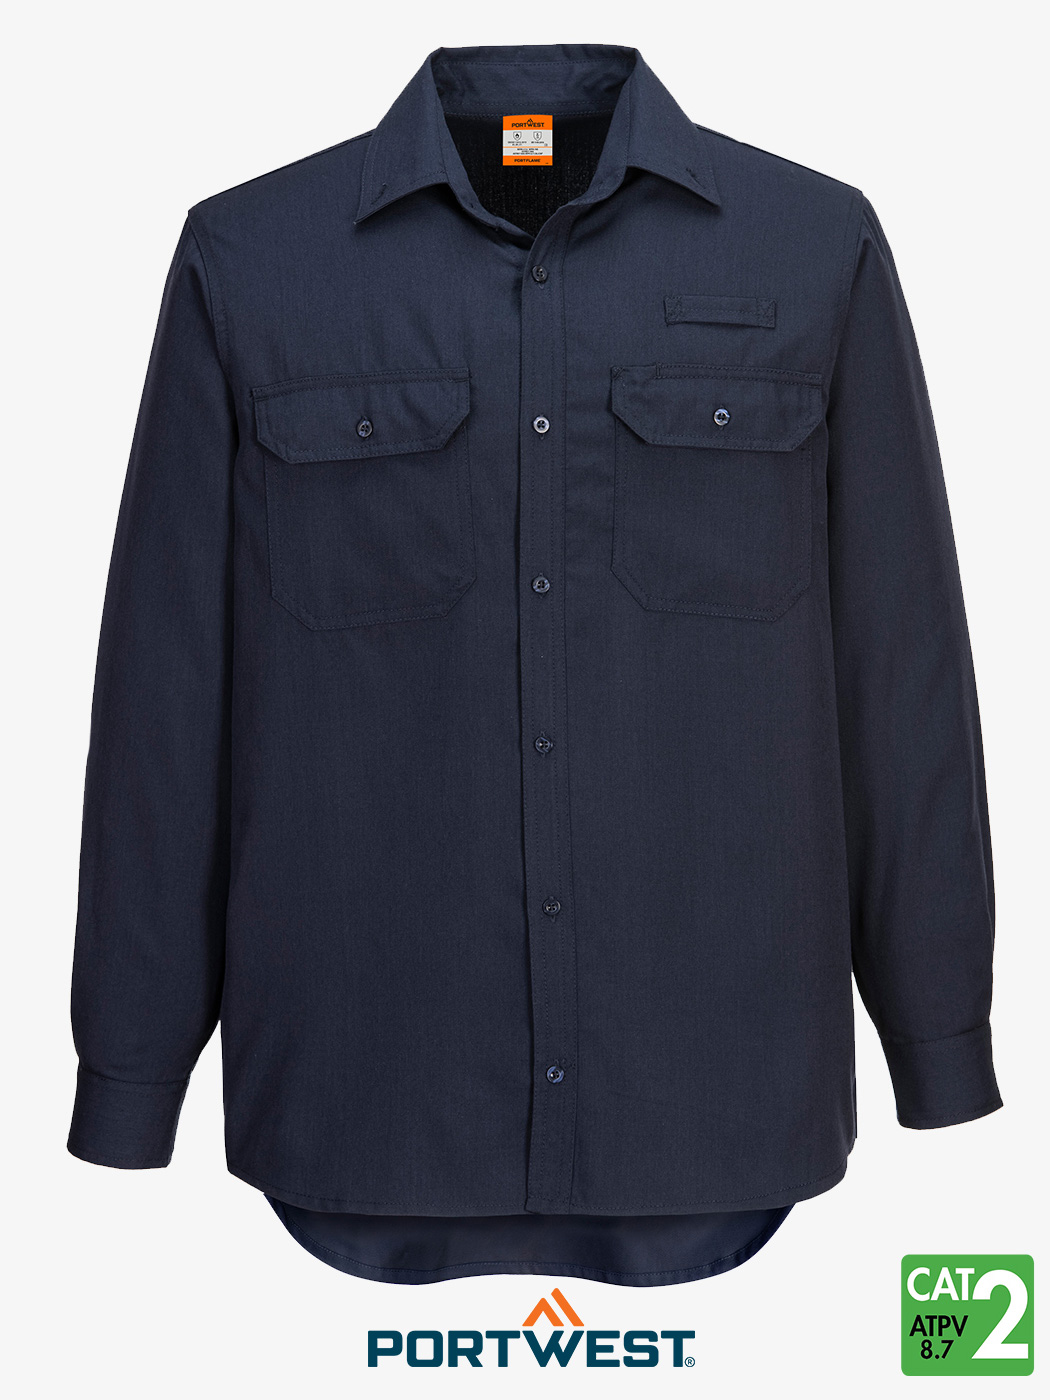 Portflame®+ 5.5 oz Vented FR Work Shirt – Style FR705